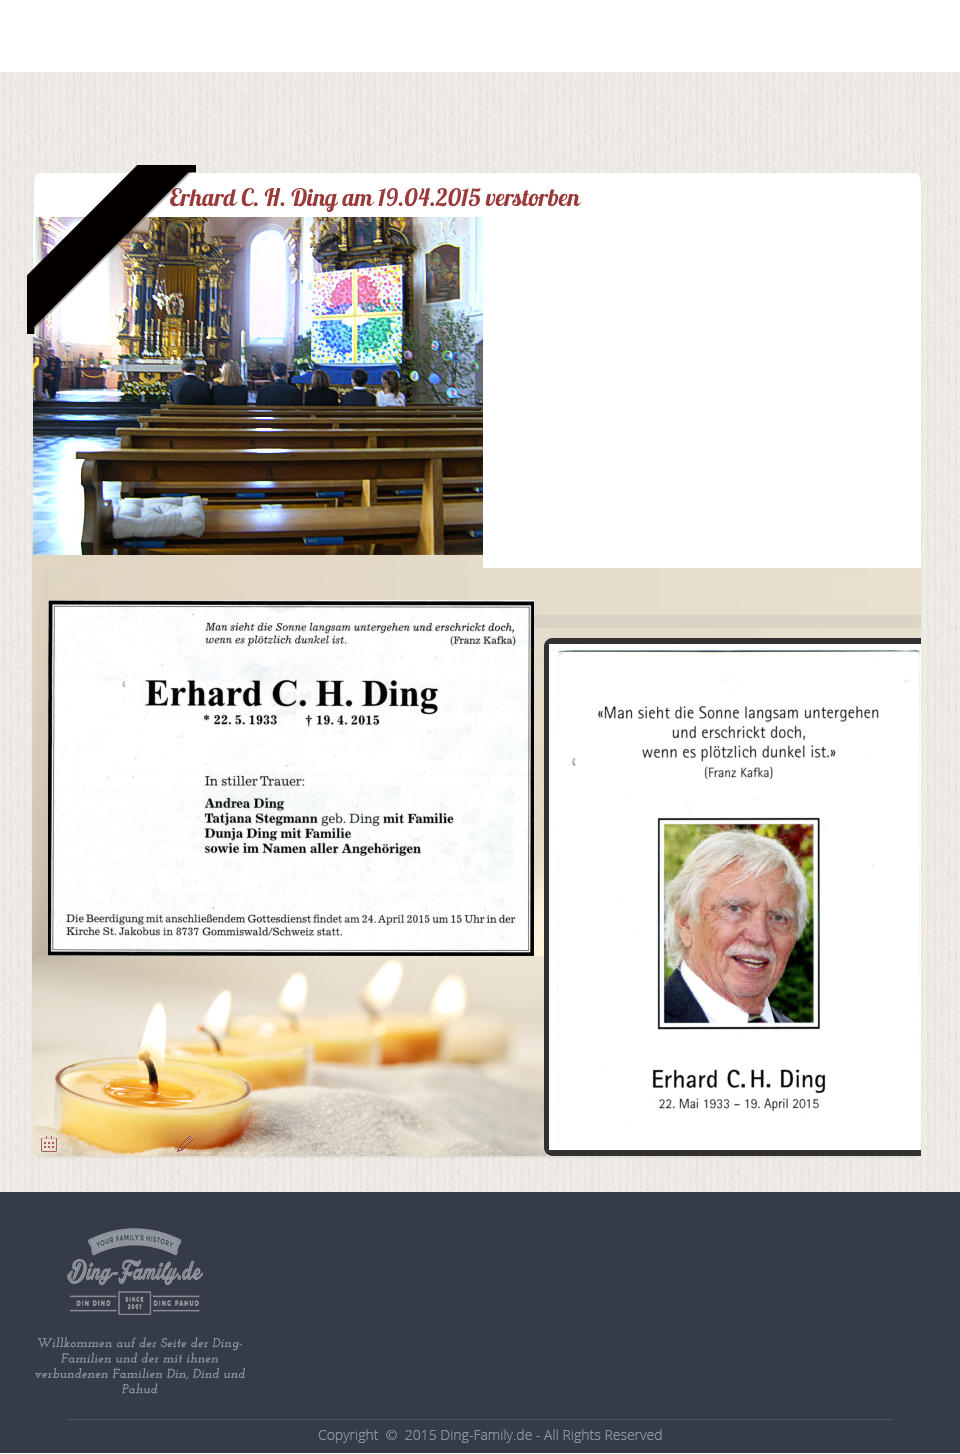 Willkommen auf der Seite der Ding-Familien und der mit ihnen verbundenen Familien Din, Dind und Pahud Erhard C. H. Ding am 19.04.2015 verstorben